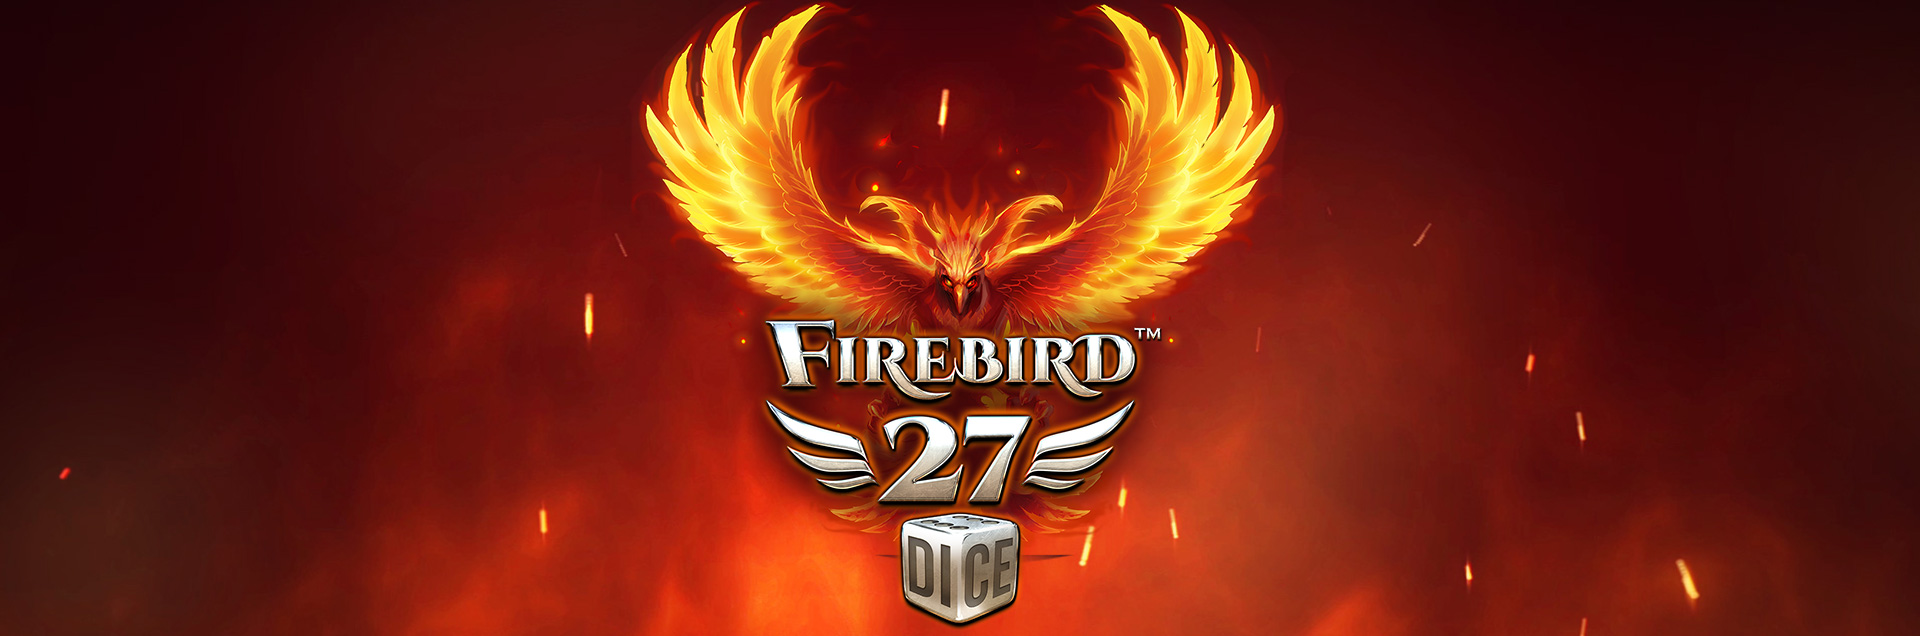 Firebird 27 Dice header games